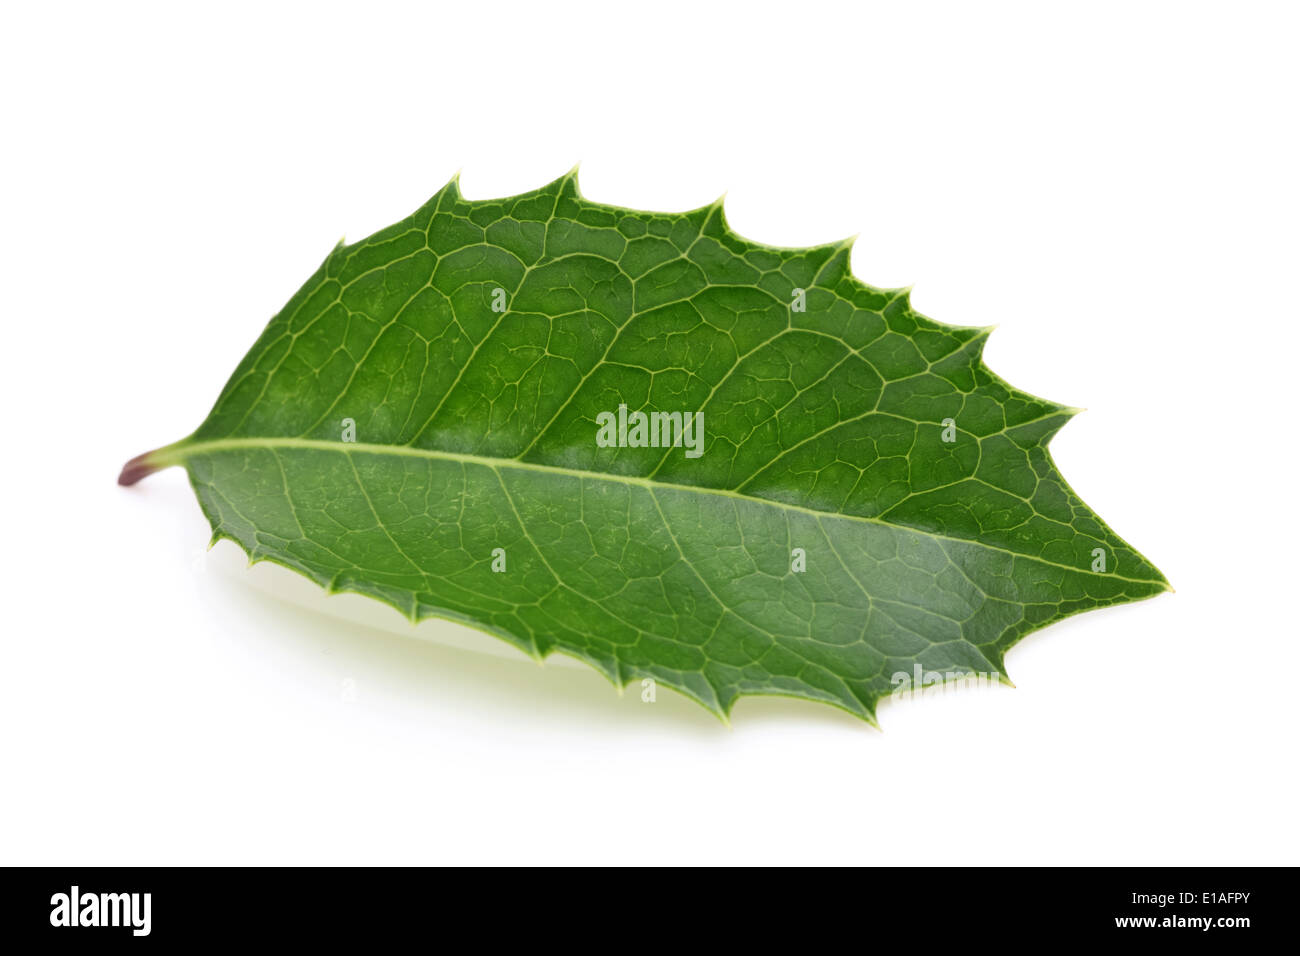 holly leaf on white background, hiiragi Stock Photo